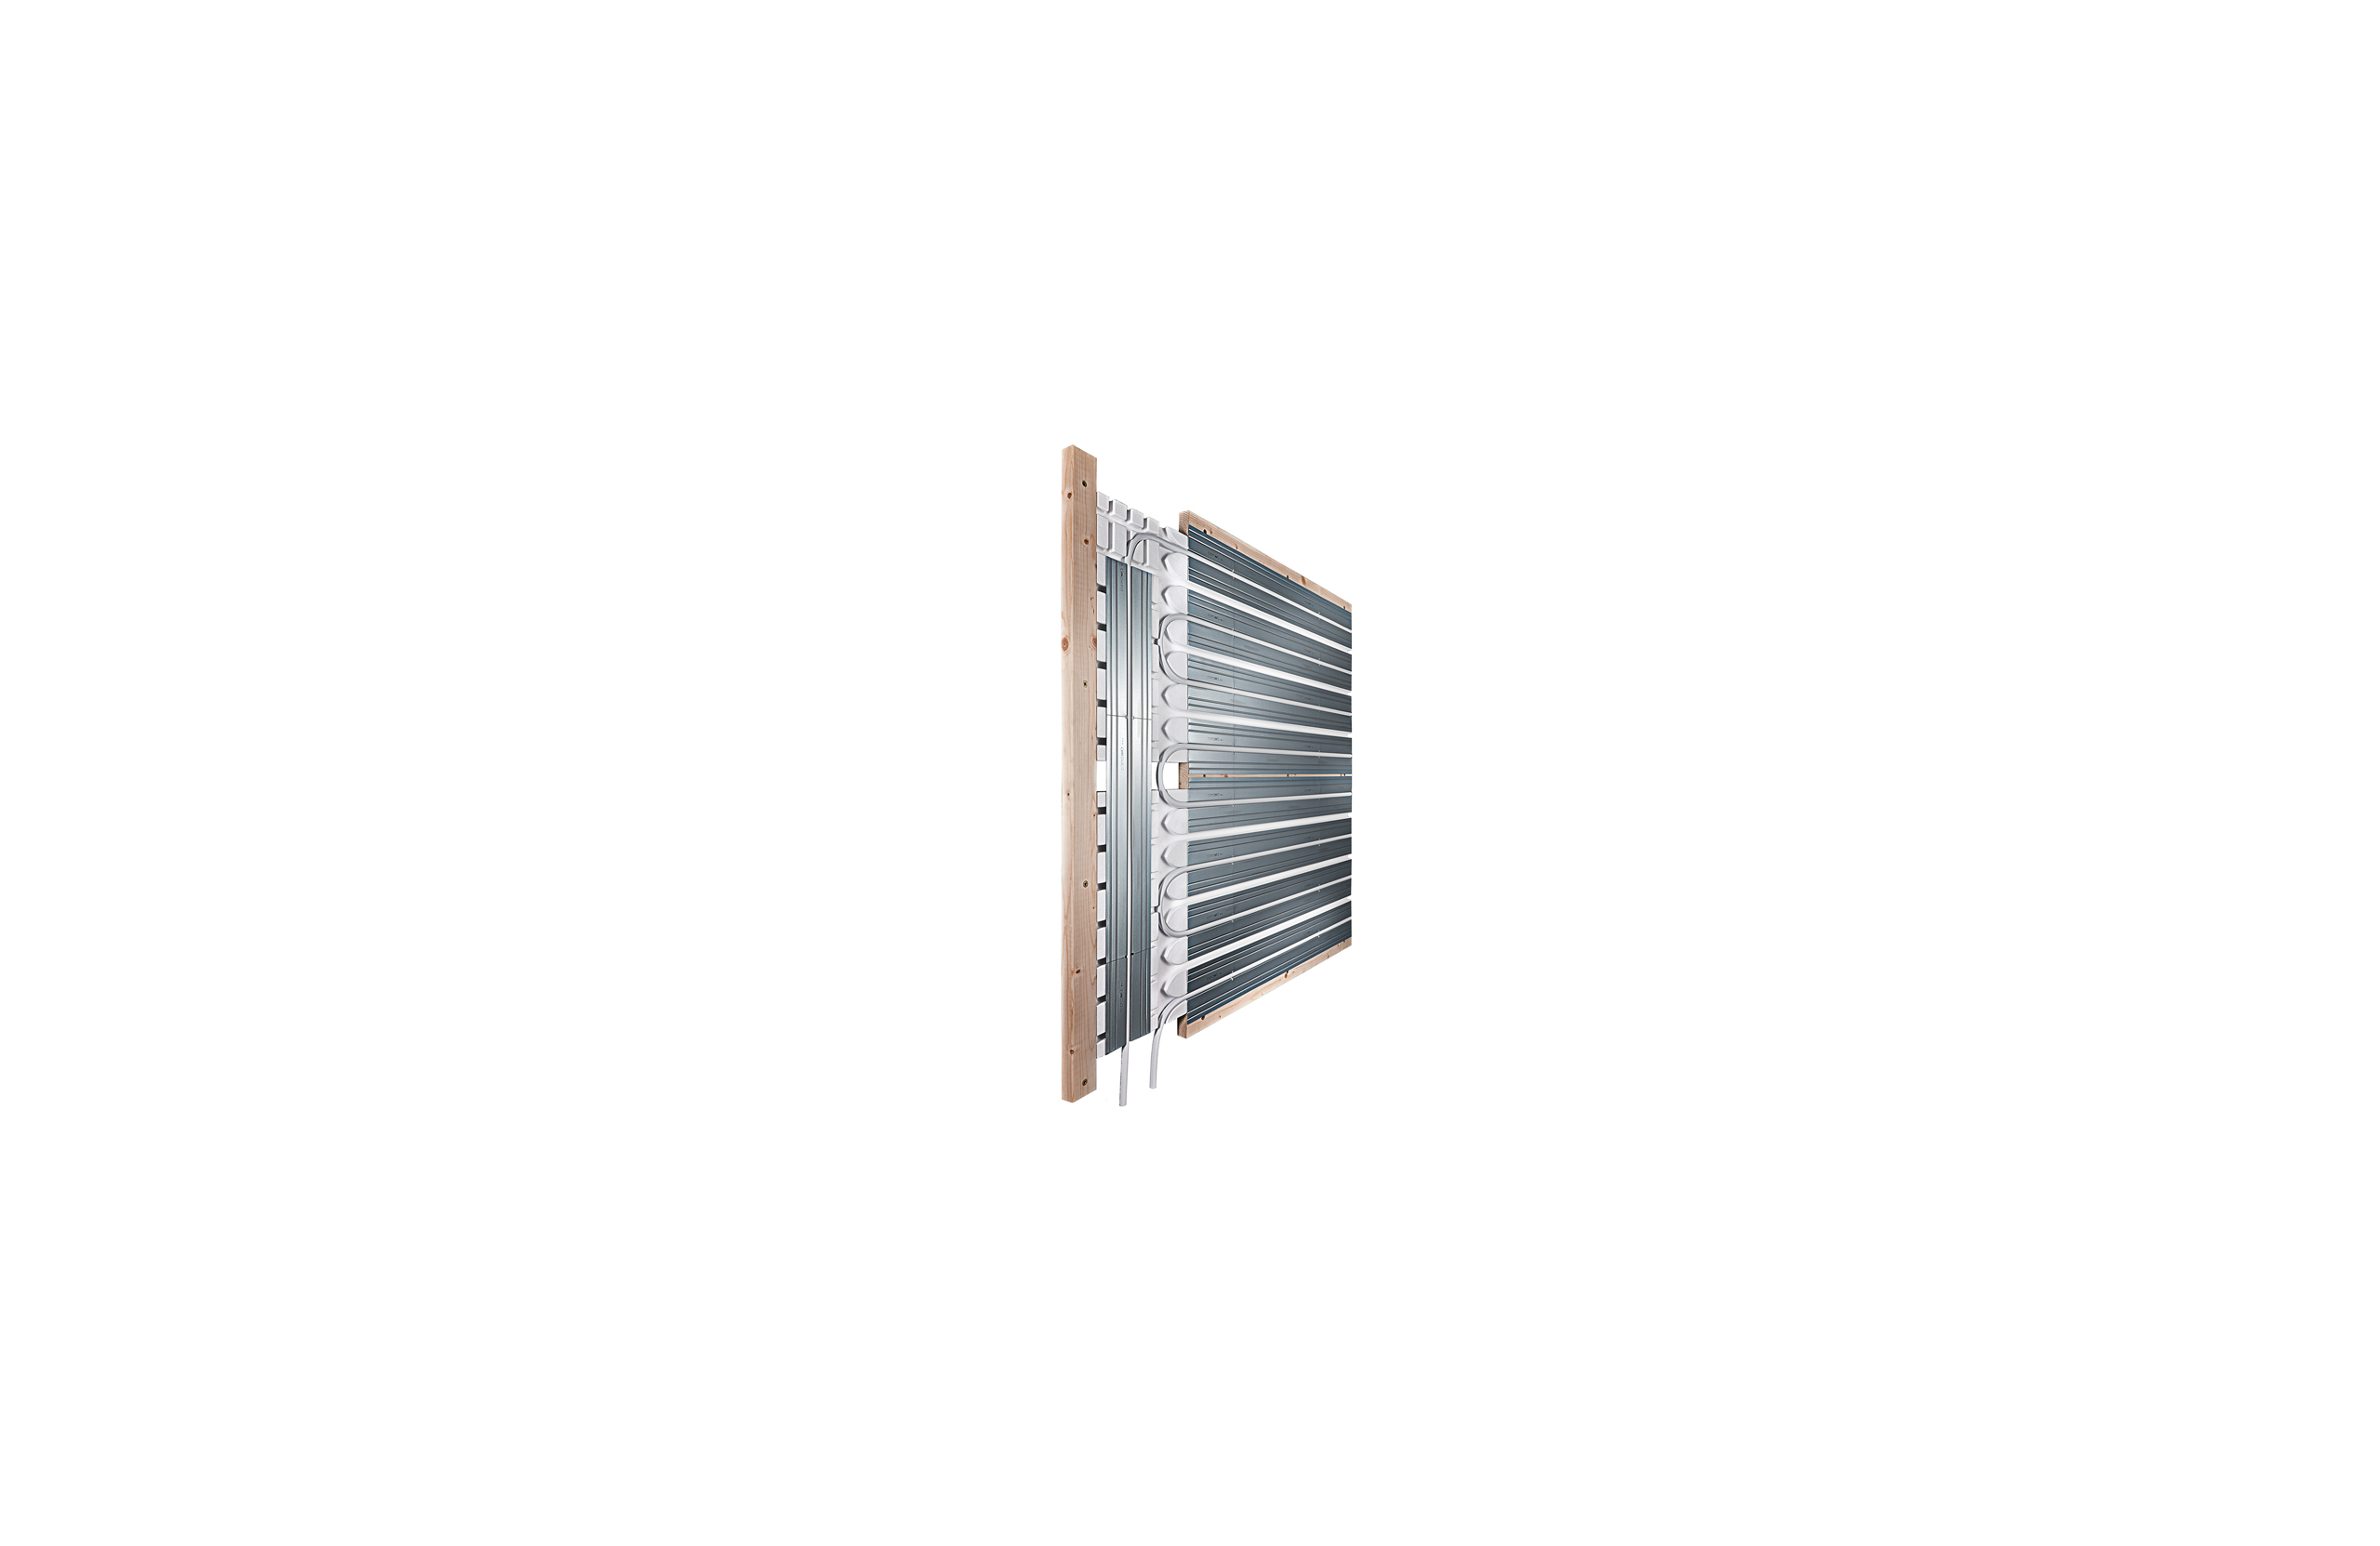 Стеновое отопление для системы сухой стяжки x-net C22 – идеальное стеновое отопление для сухого строительства.